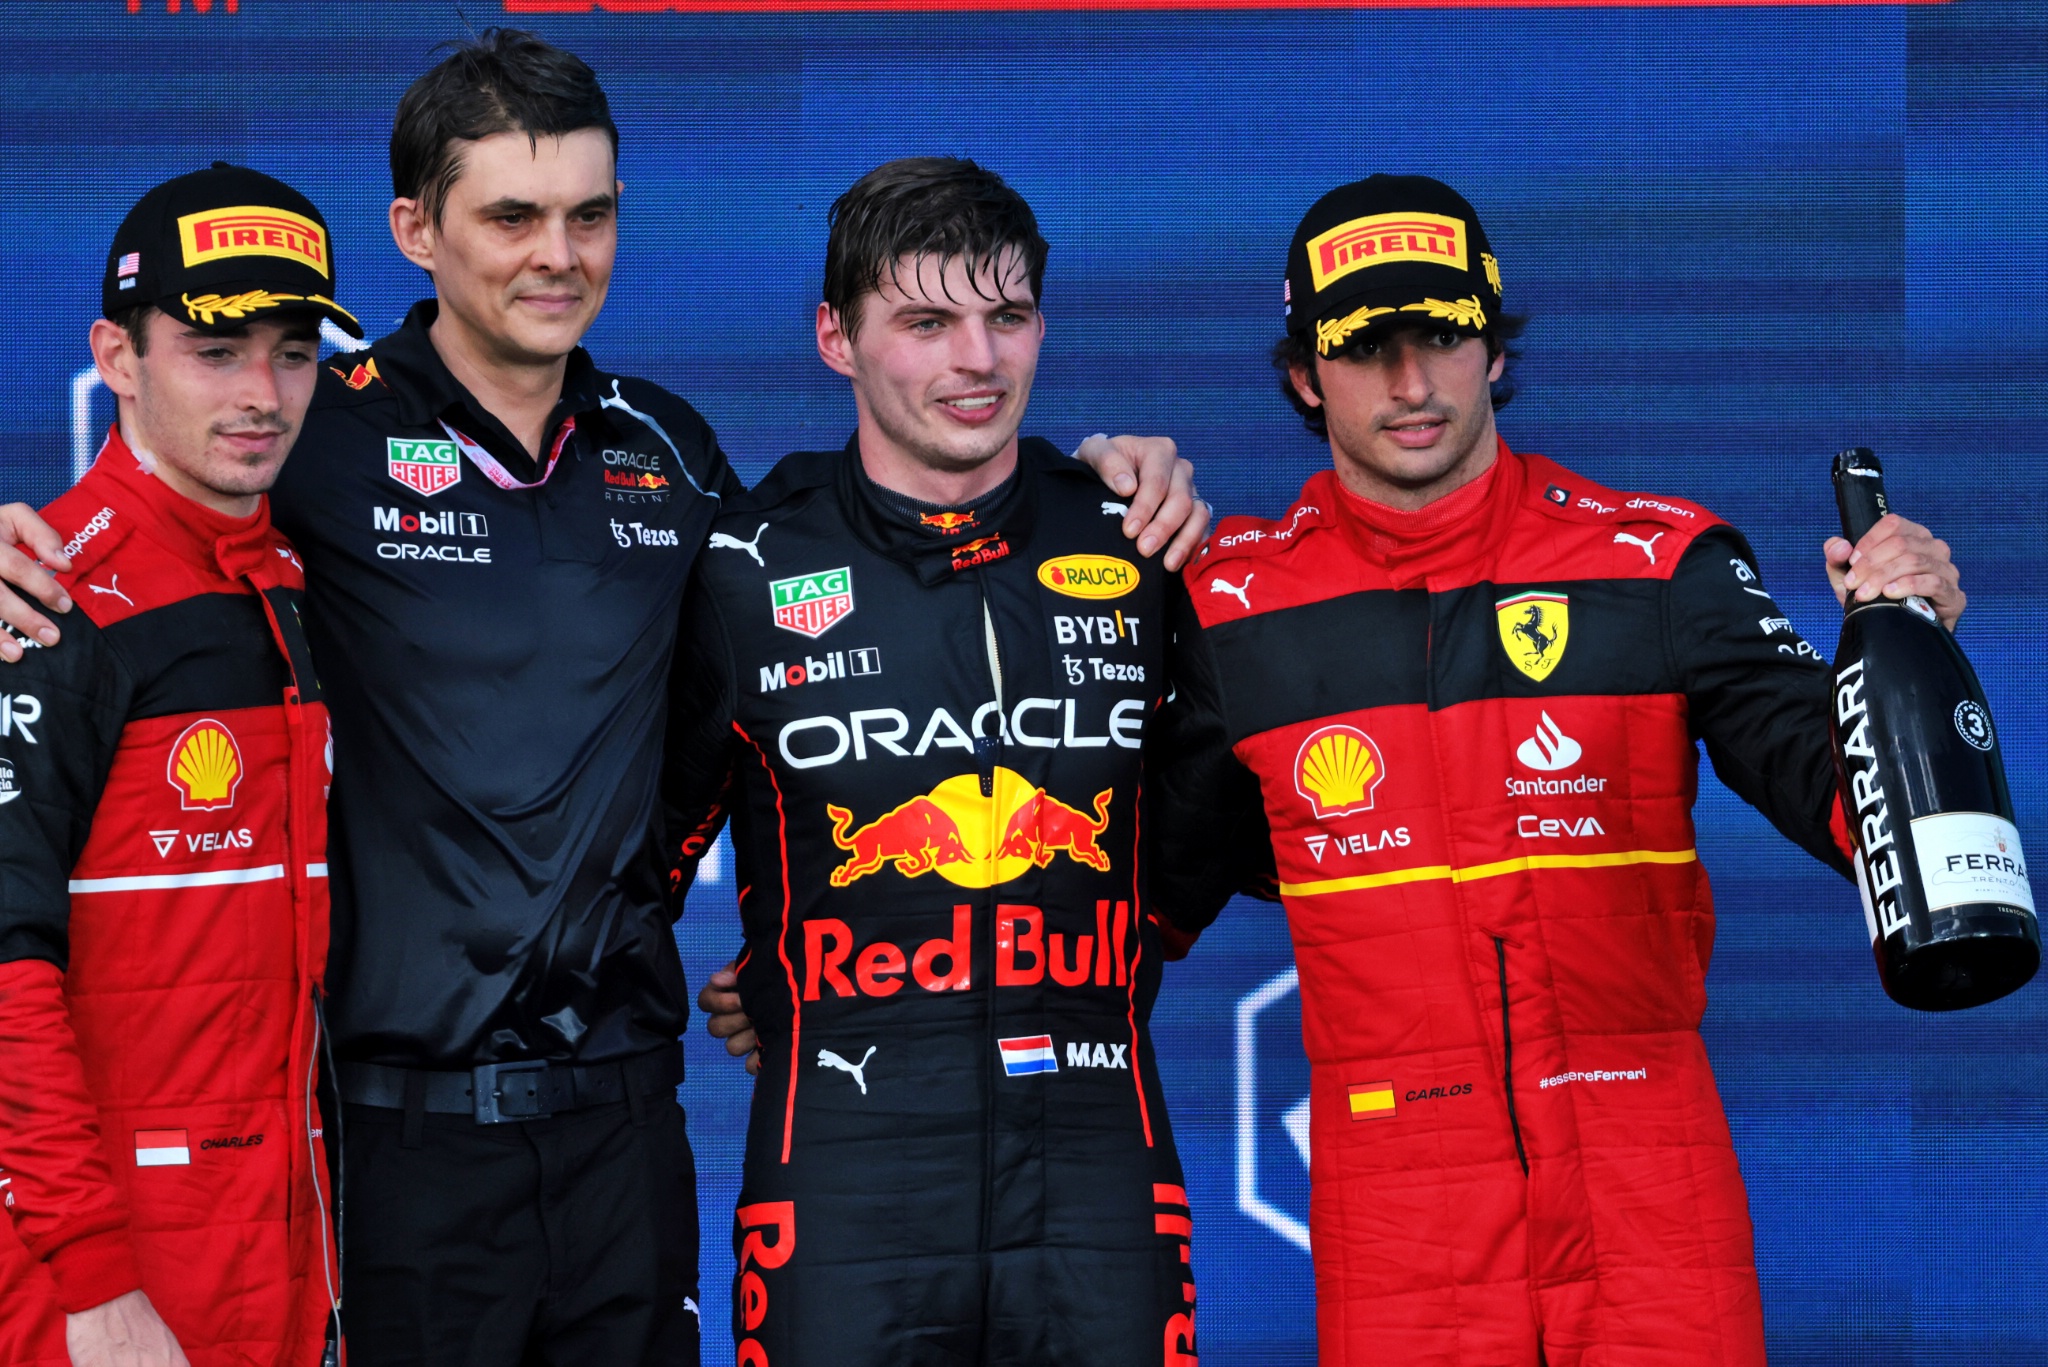 Podium (L ke Kanan): Charles Leclerc (MON) Ferrari, kedua; Max Verstappen (NLD) Red Bull Racing, pemenang balapan; Carlos Sainz